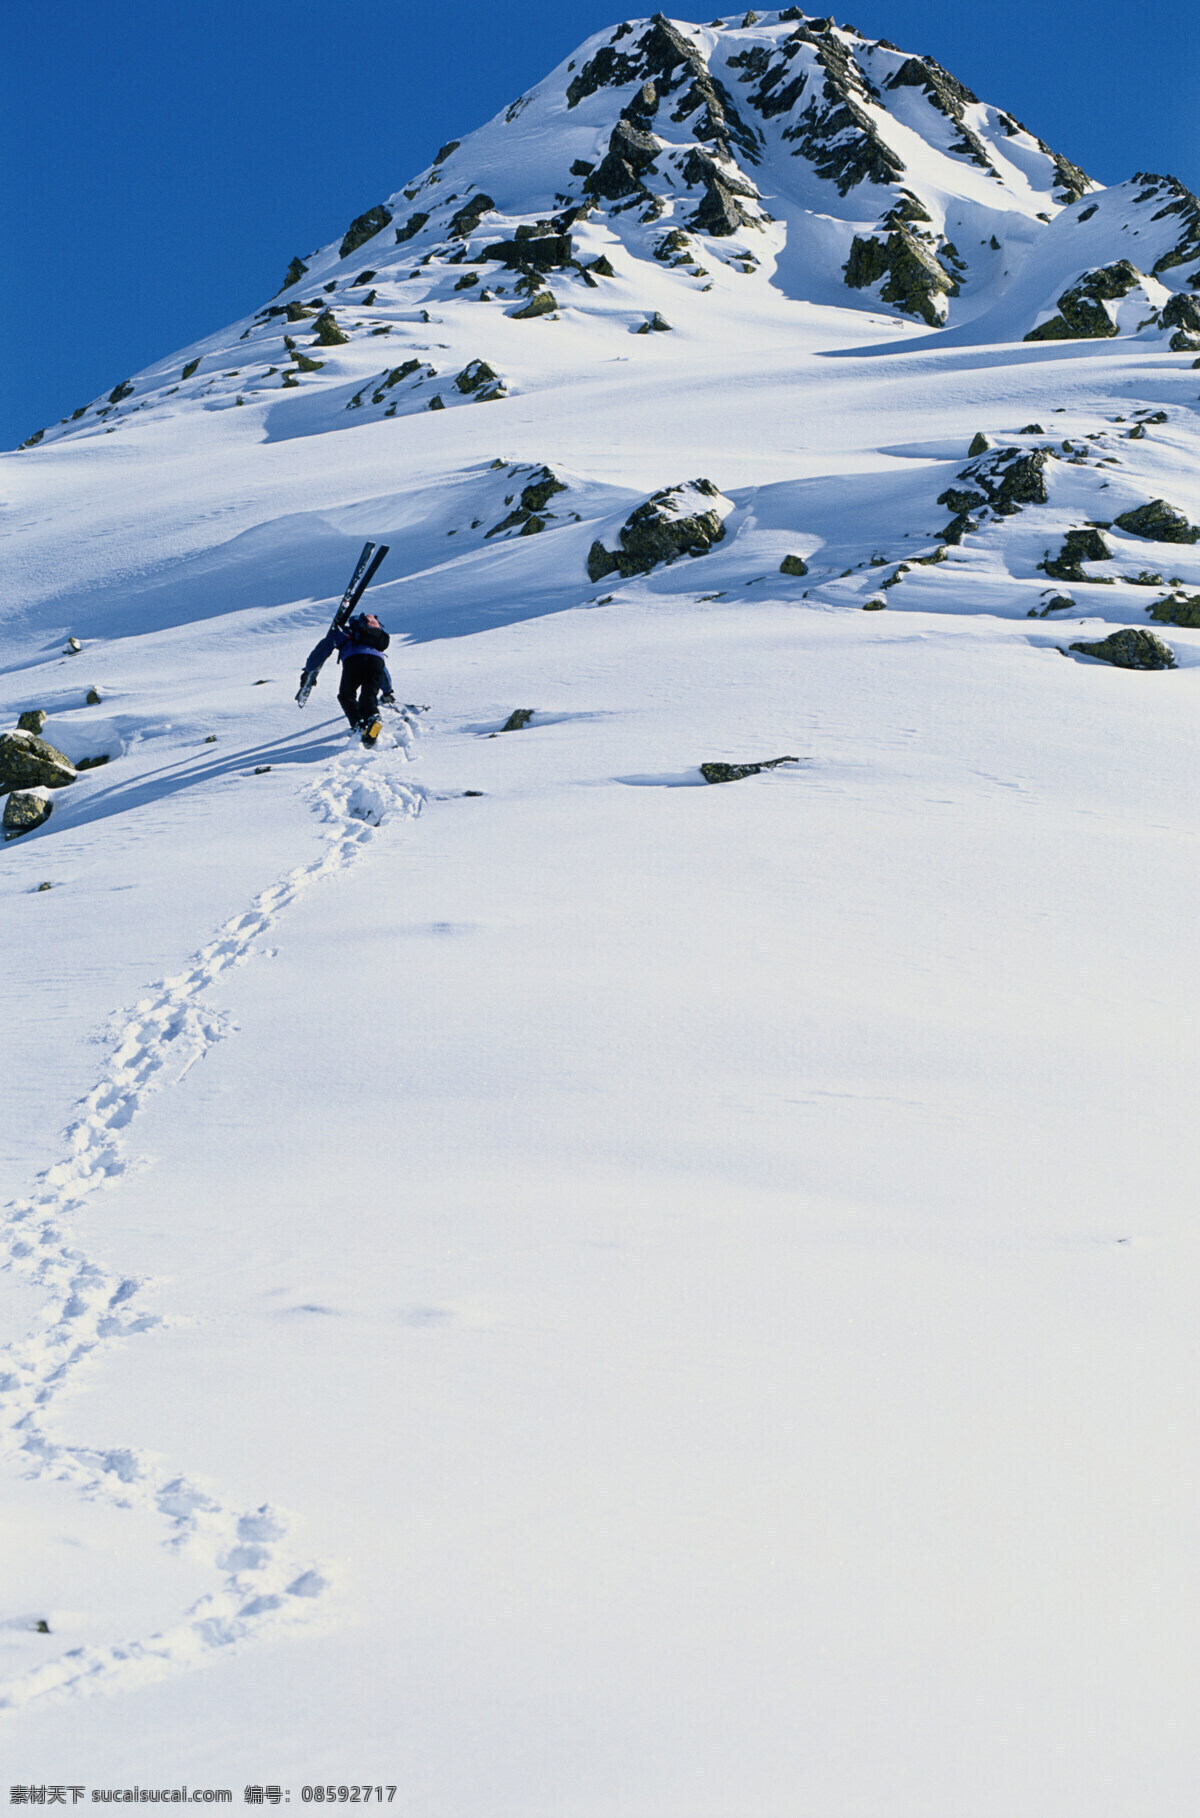 雪山 上 人 雪地运动 滑雪 雪橇 体育运动 滑雪运动员 外国男性 男人 高山滑雪 生活人物 人物图片